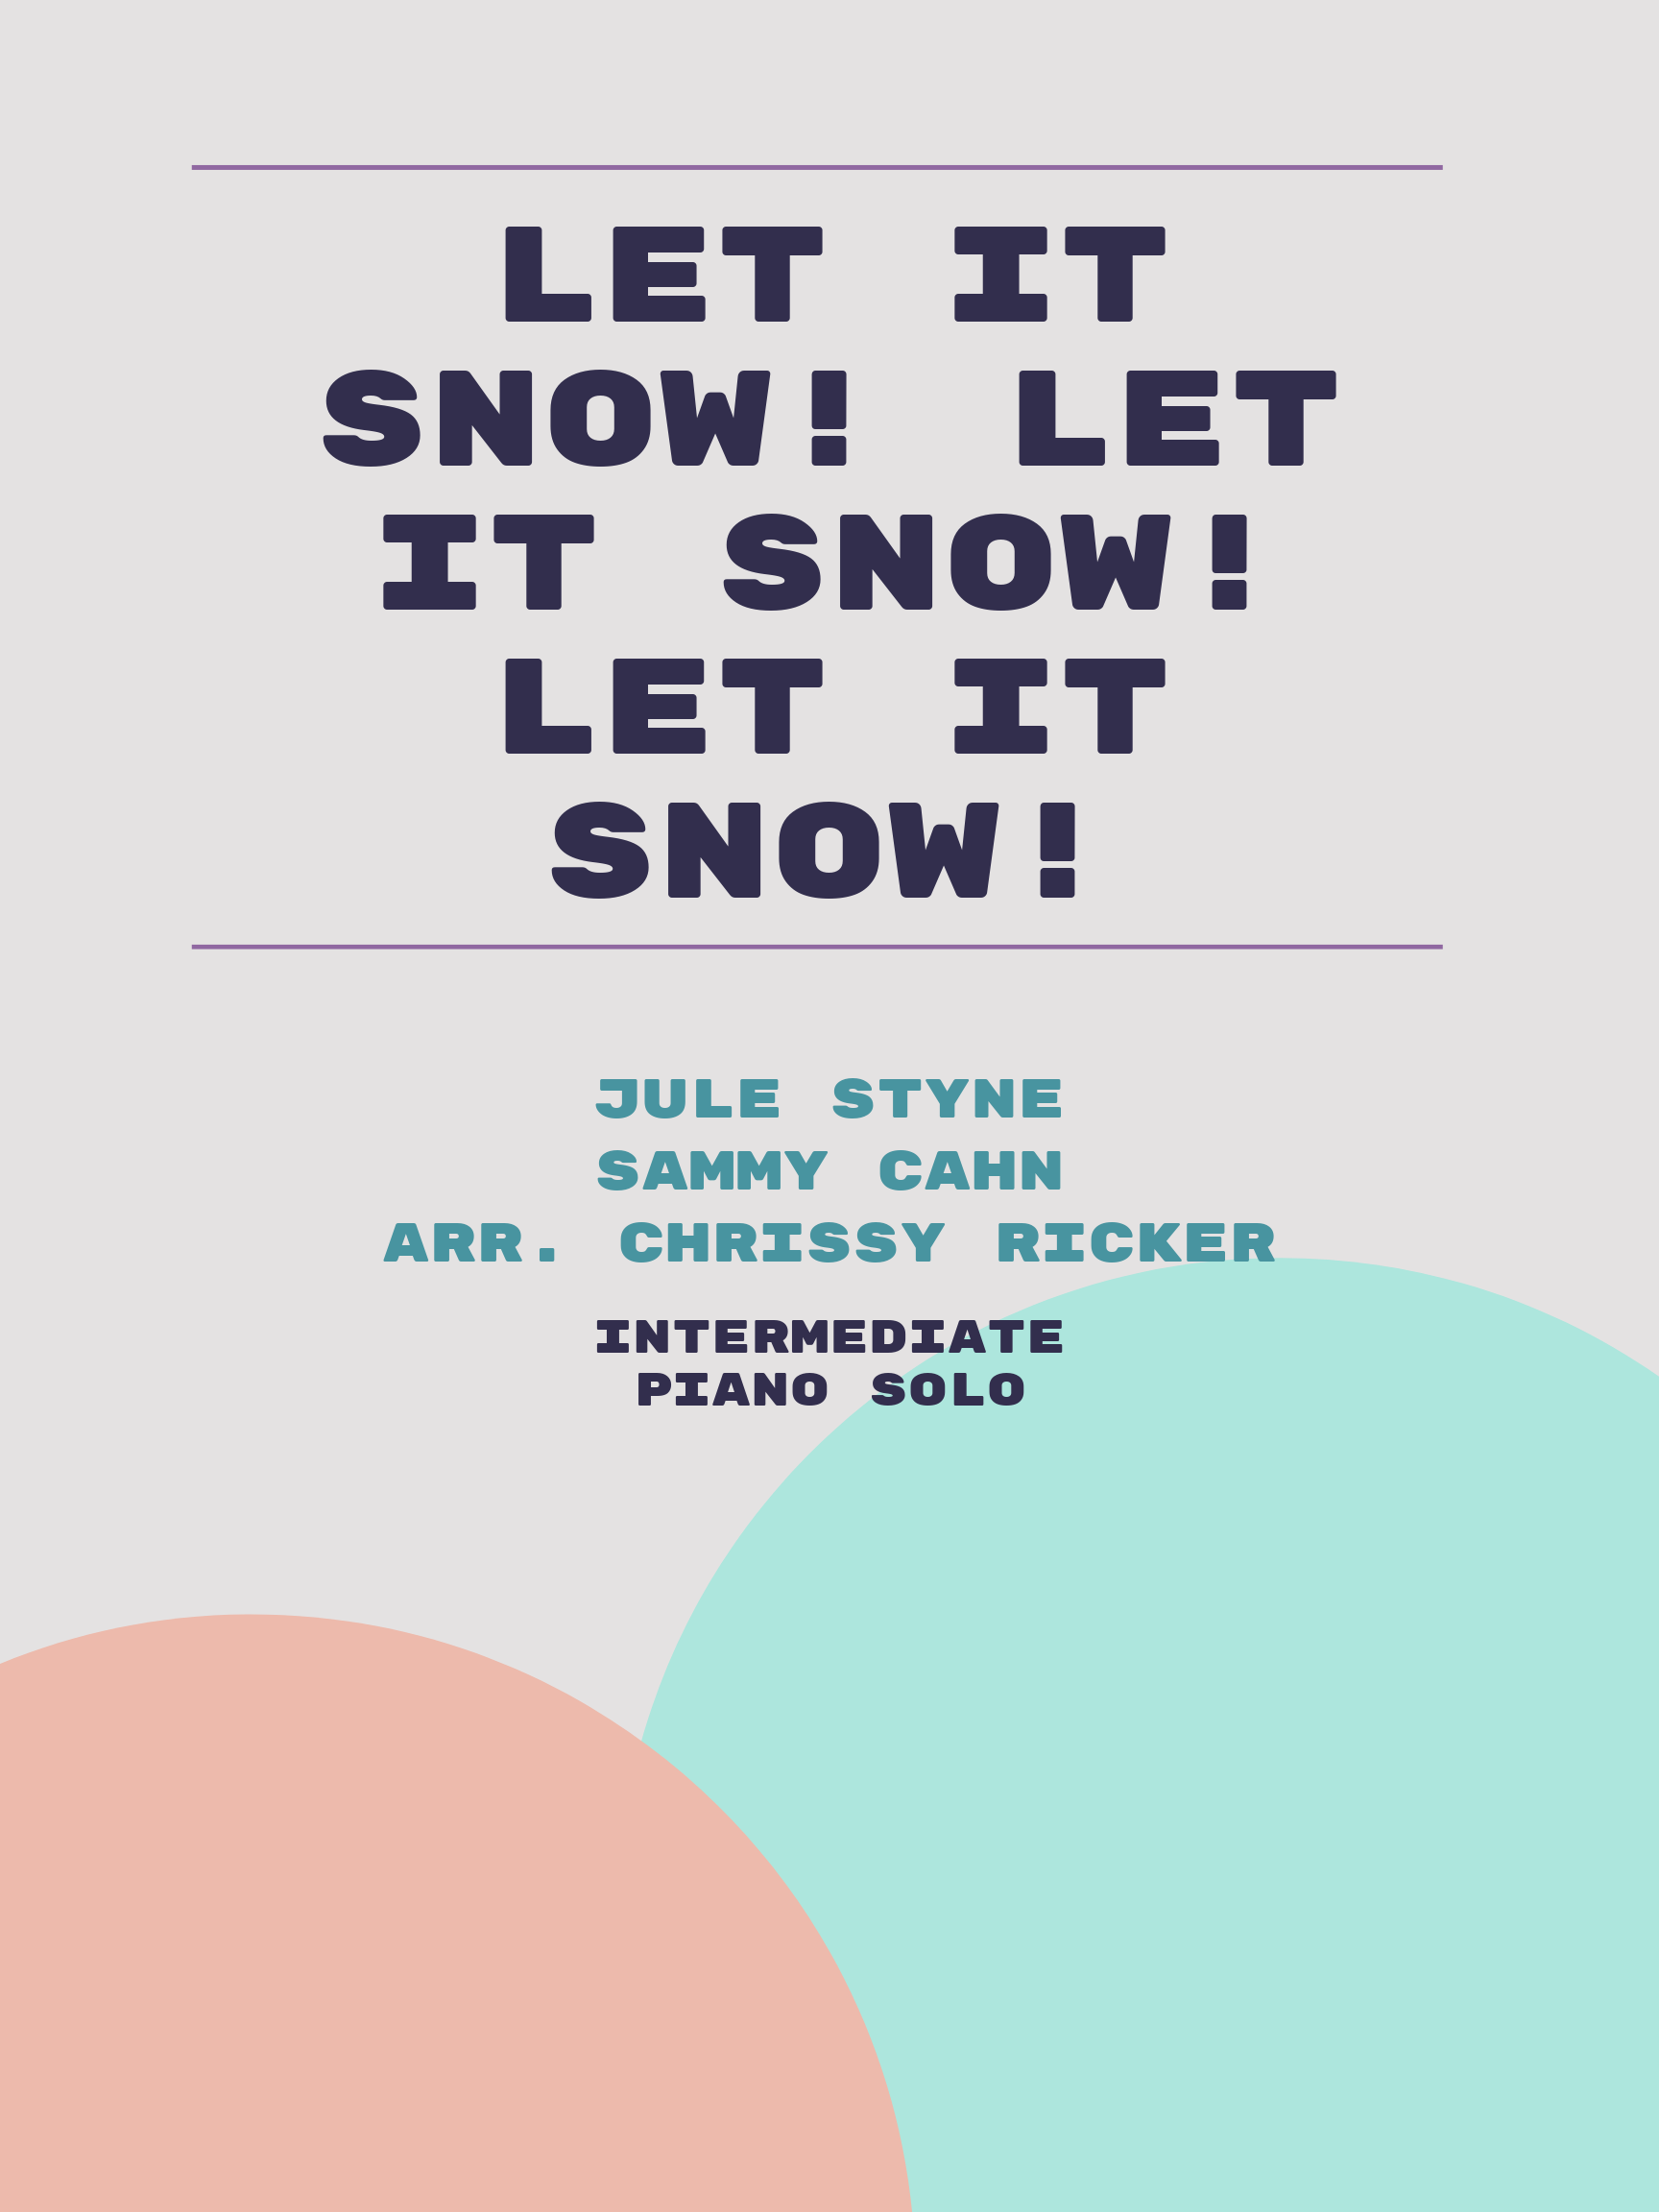 Let It Snow! Let It Snow! Let It Snow! by Jule Styne, Sammy Cahn